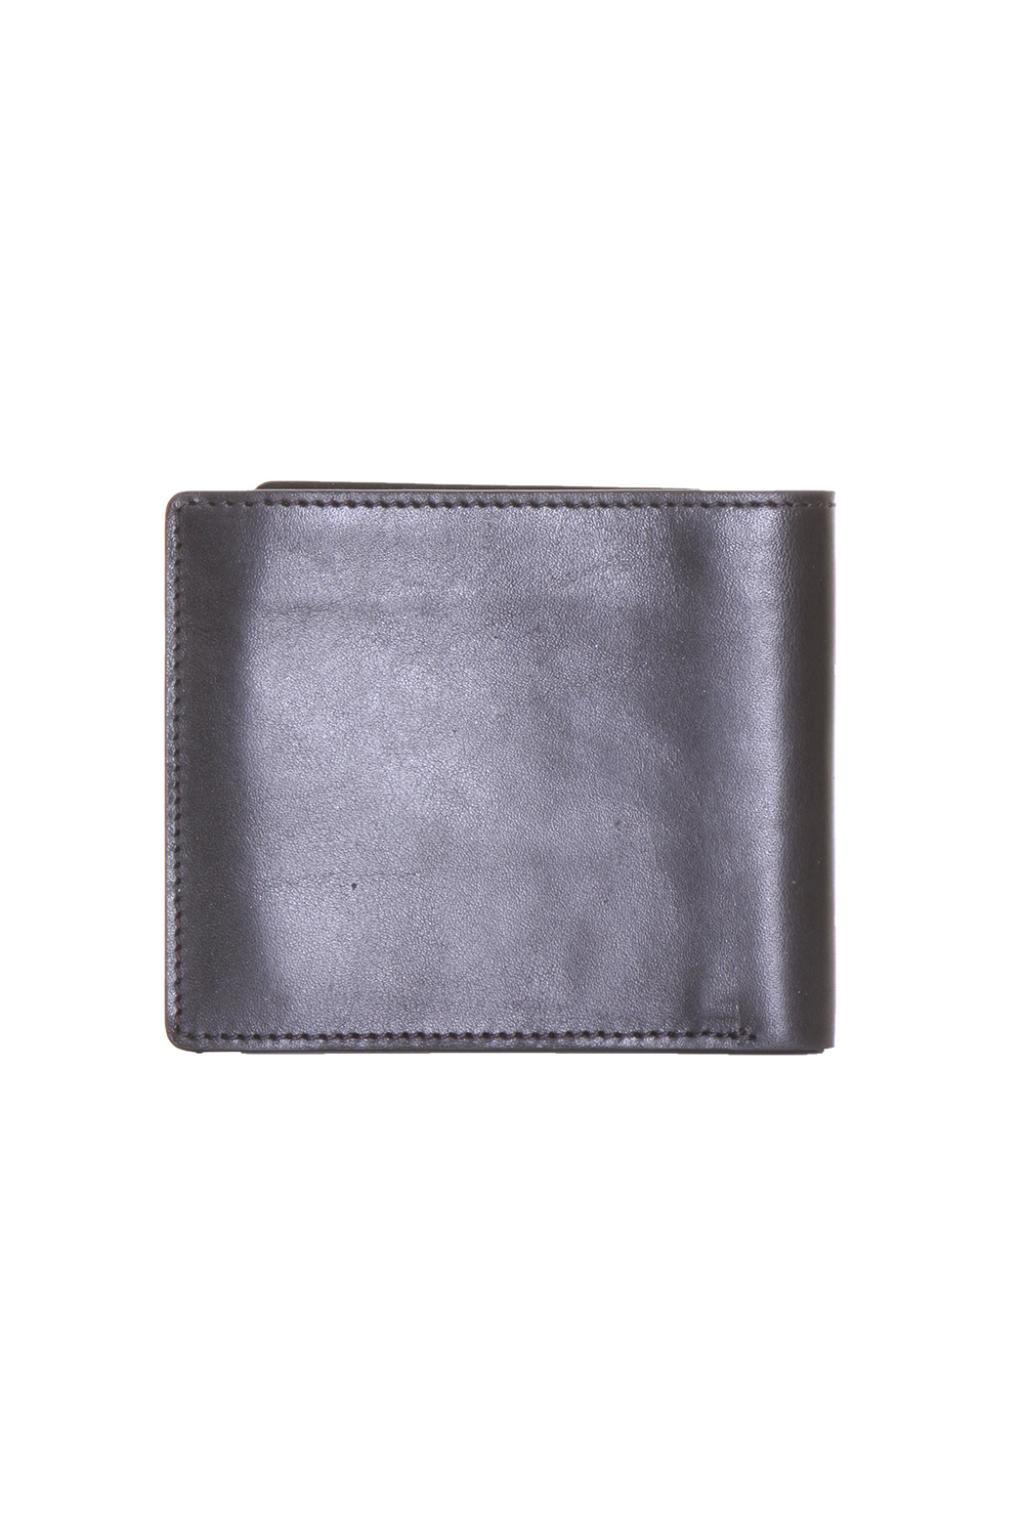 Leather Wallet Diesel Gloomy Gold - IetpShops US